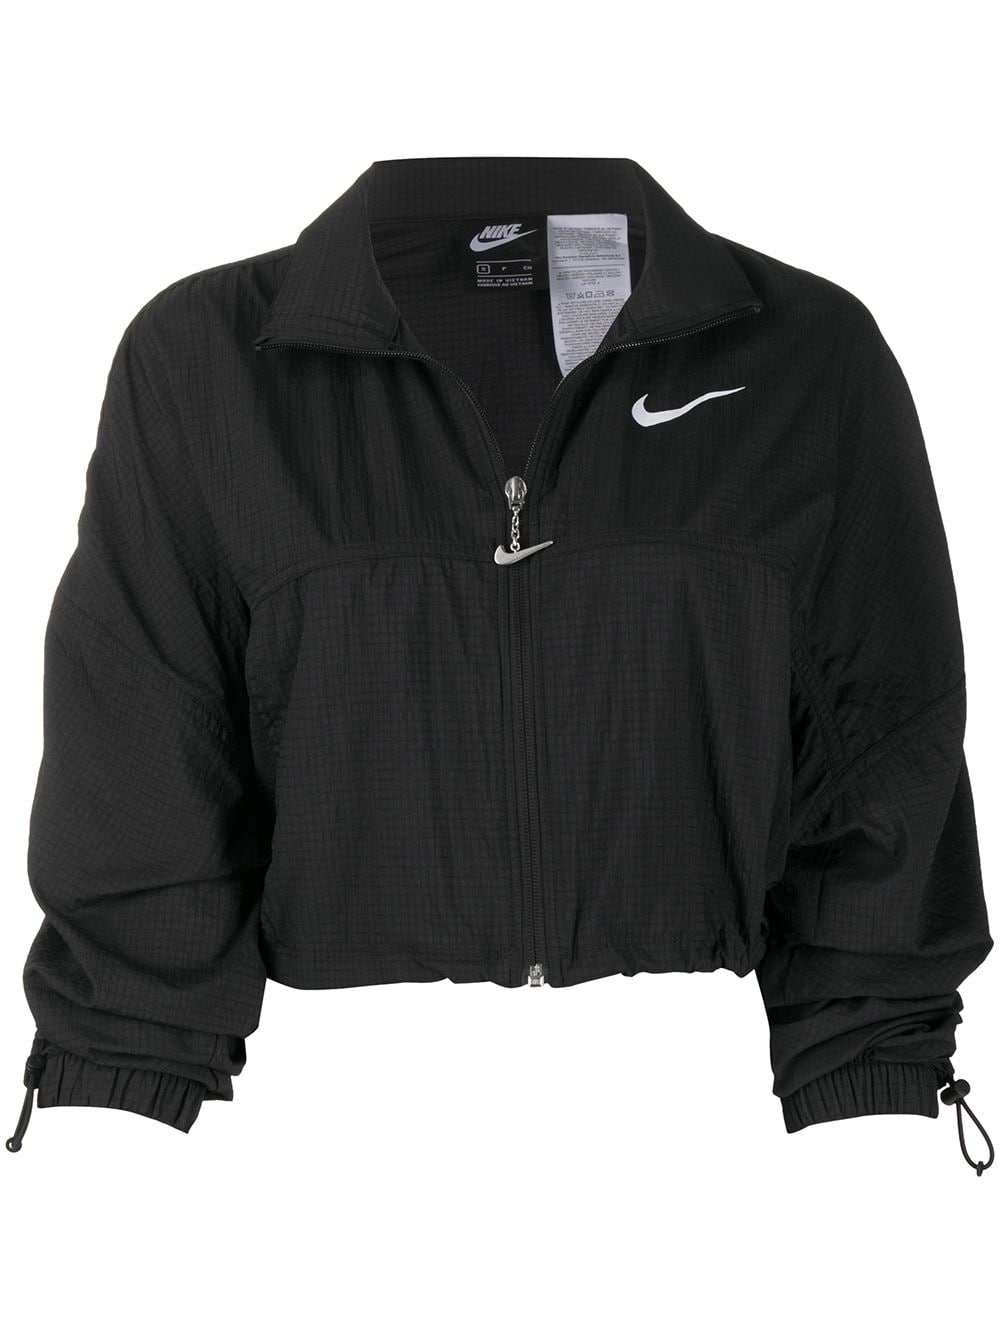 Swoosh cropped jacket | Nike | Eraldo.com